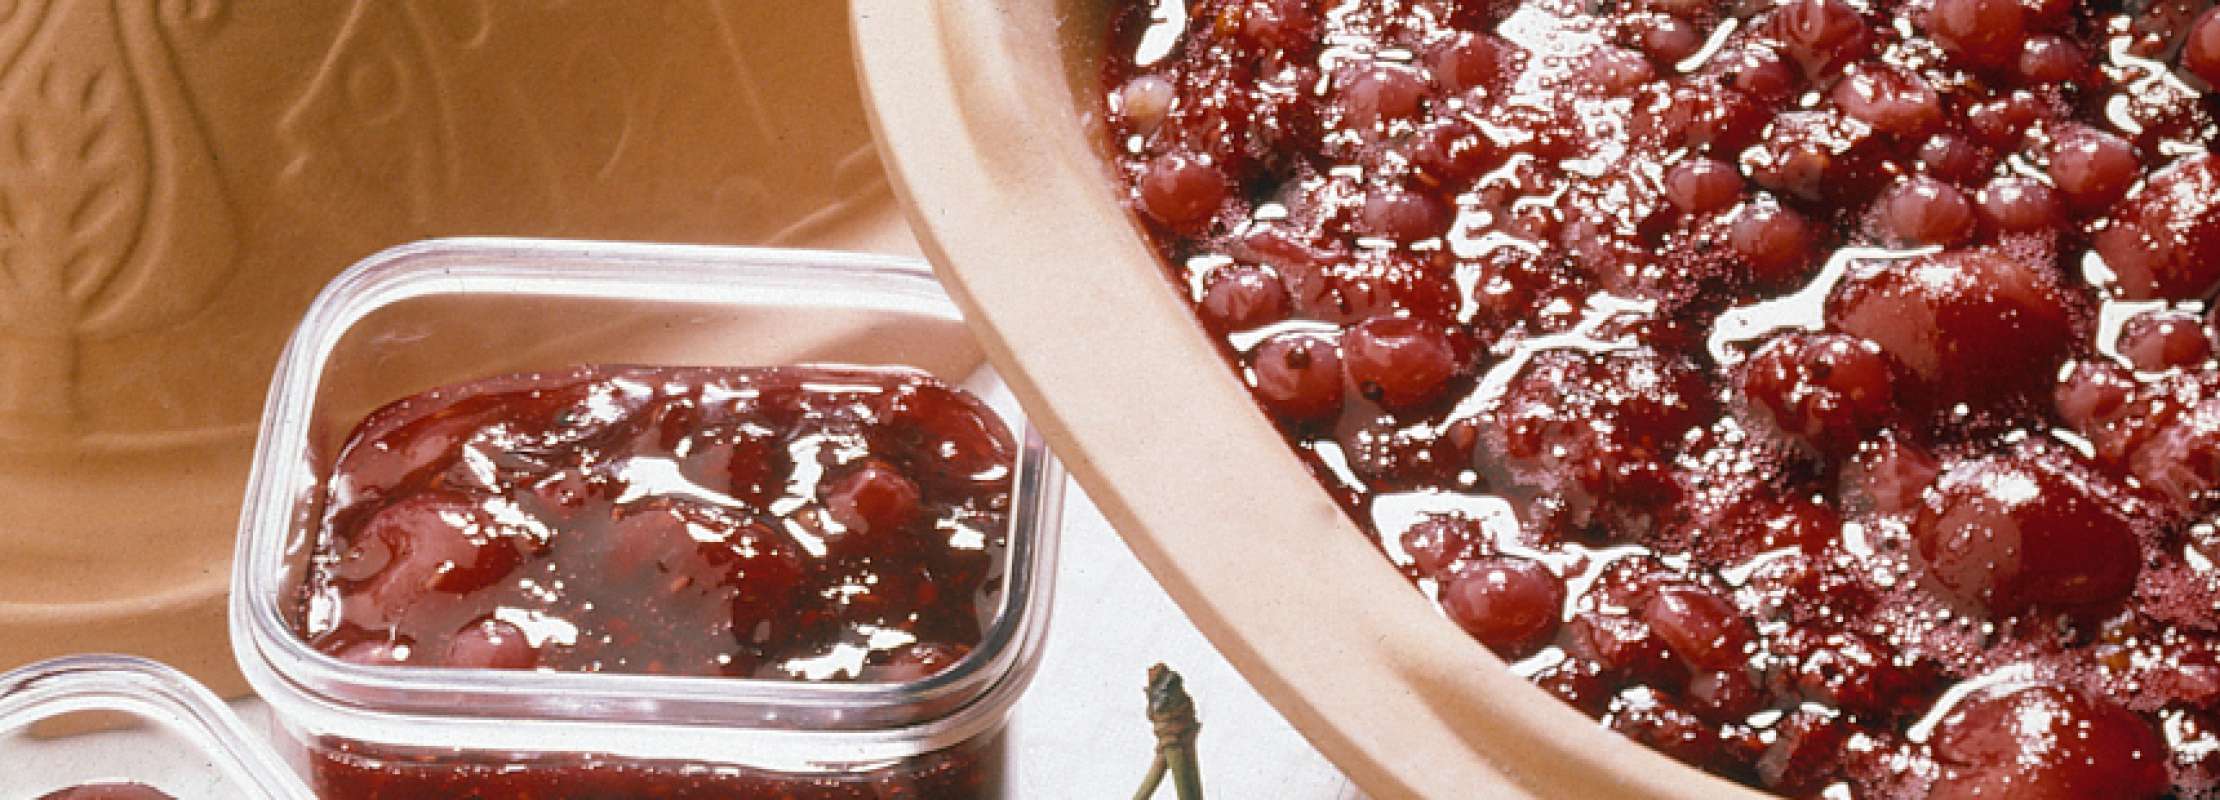 Dreifrucht-Marmelade aus dem RÖMERTOPF® | TrendXPRESS